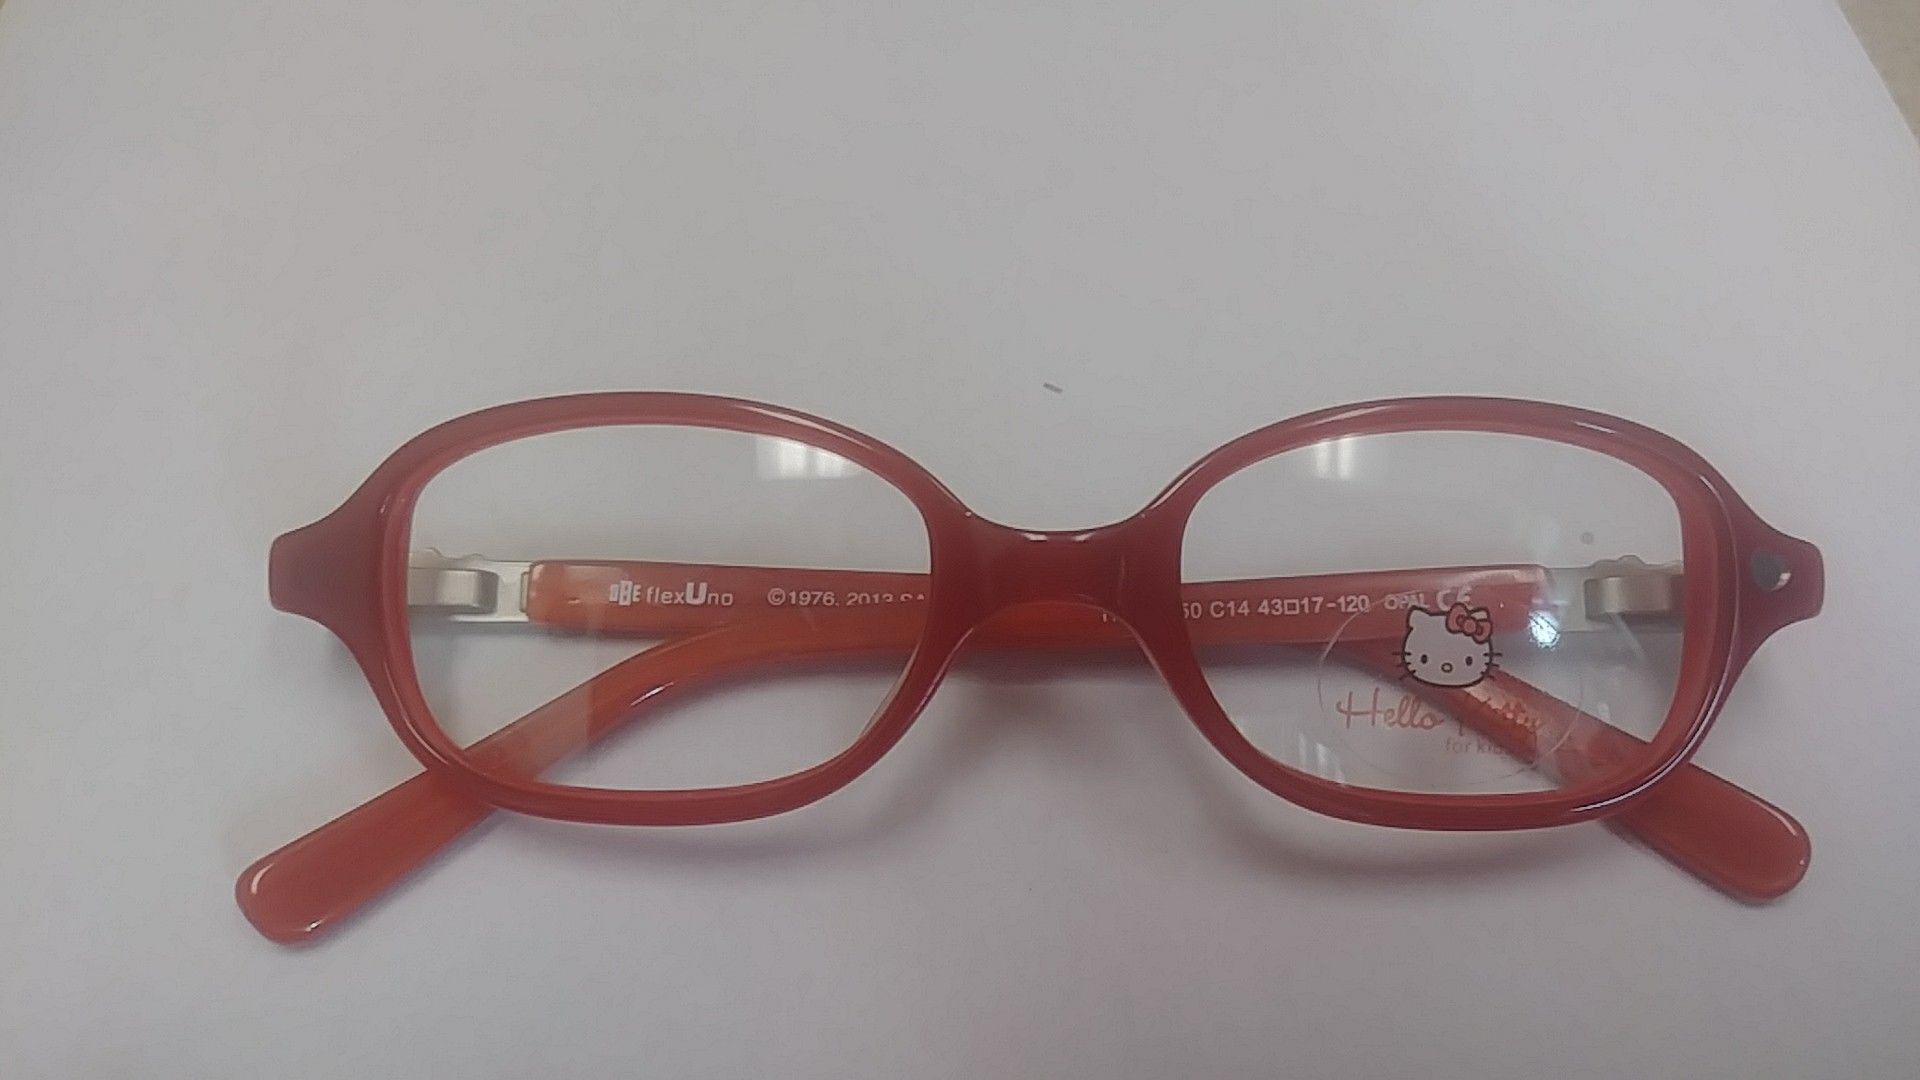 Hello Kitty eyeglass frame